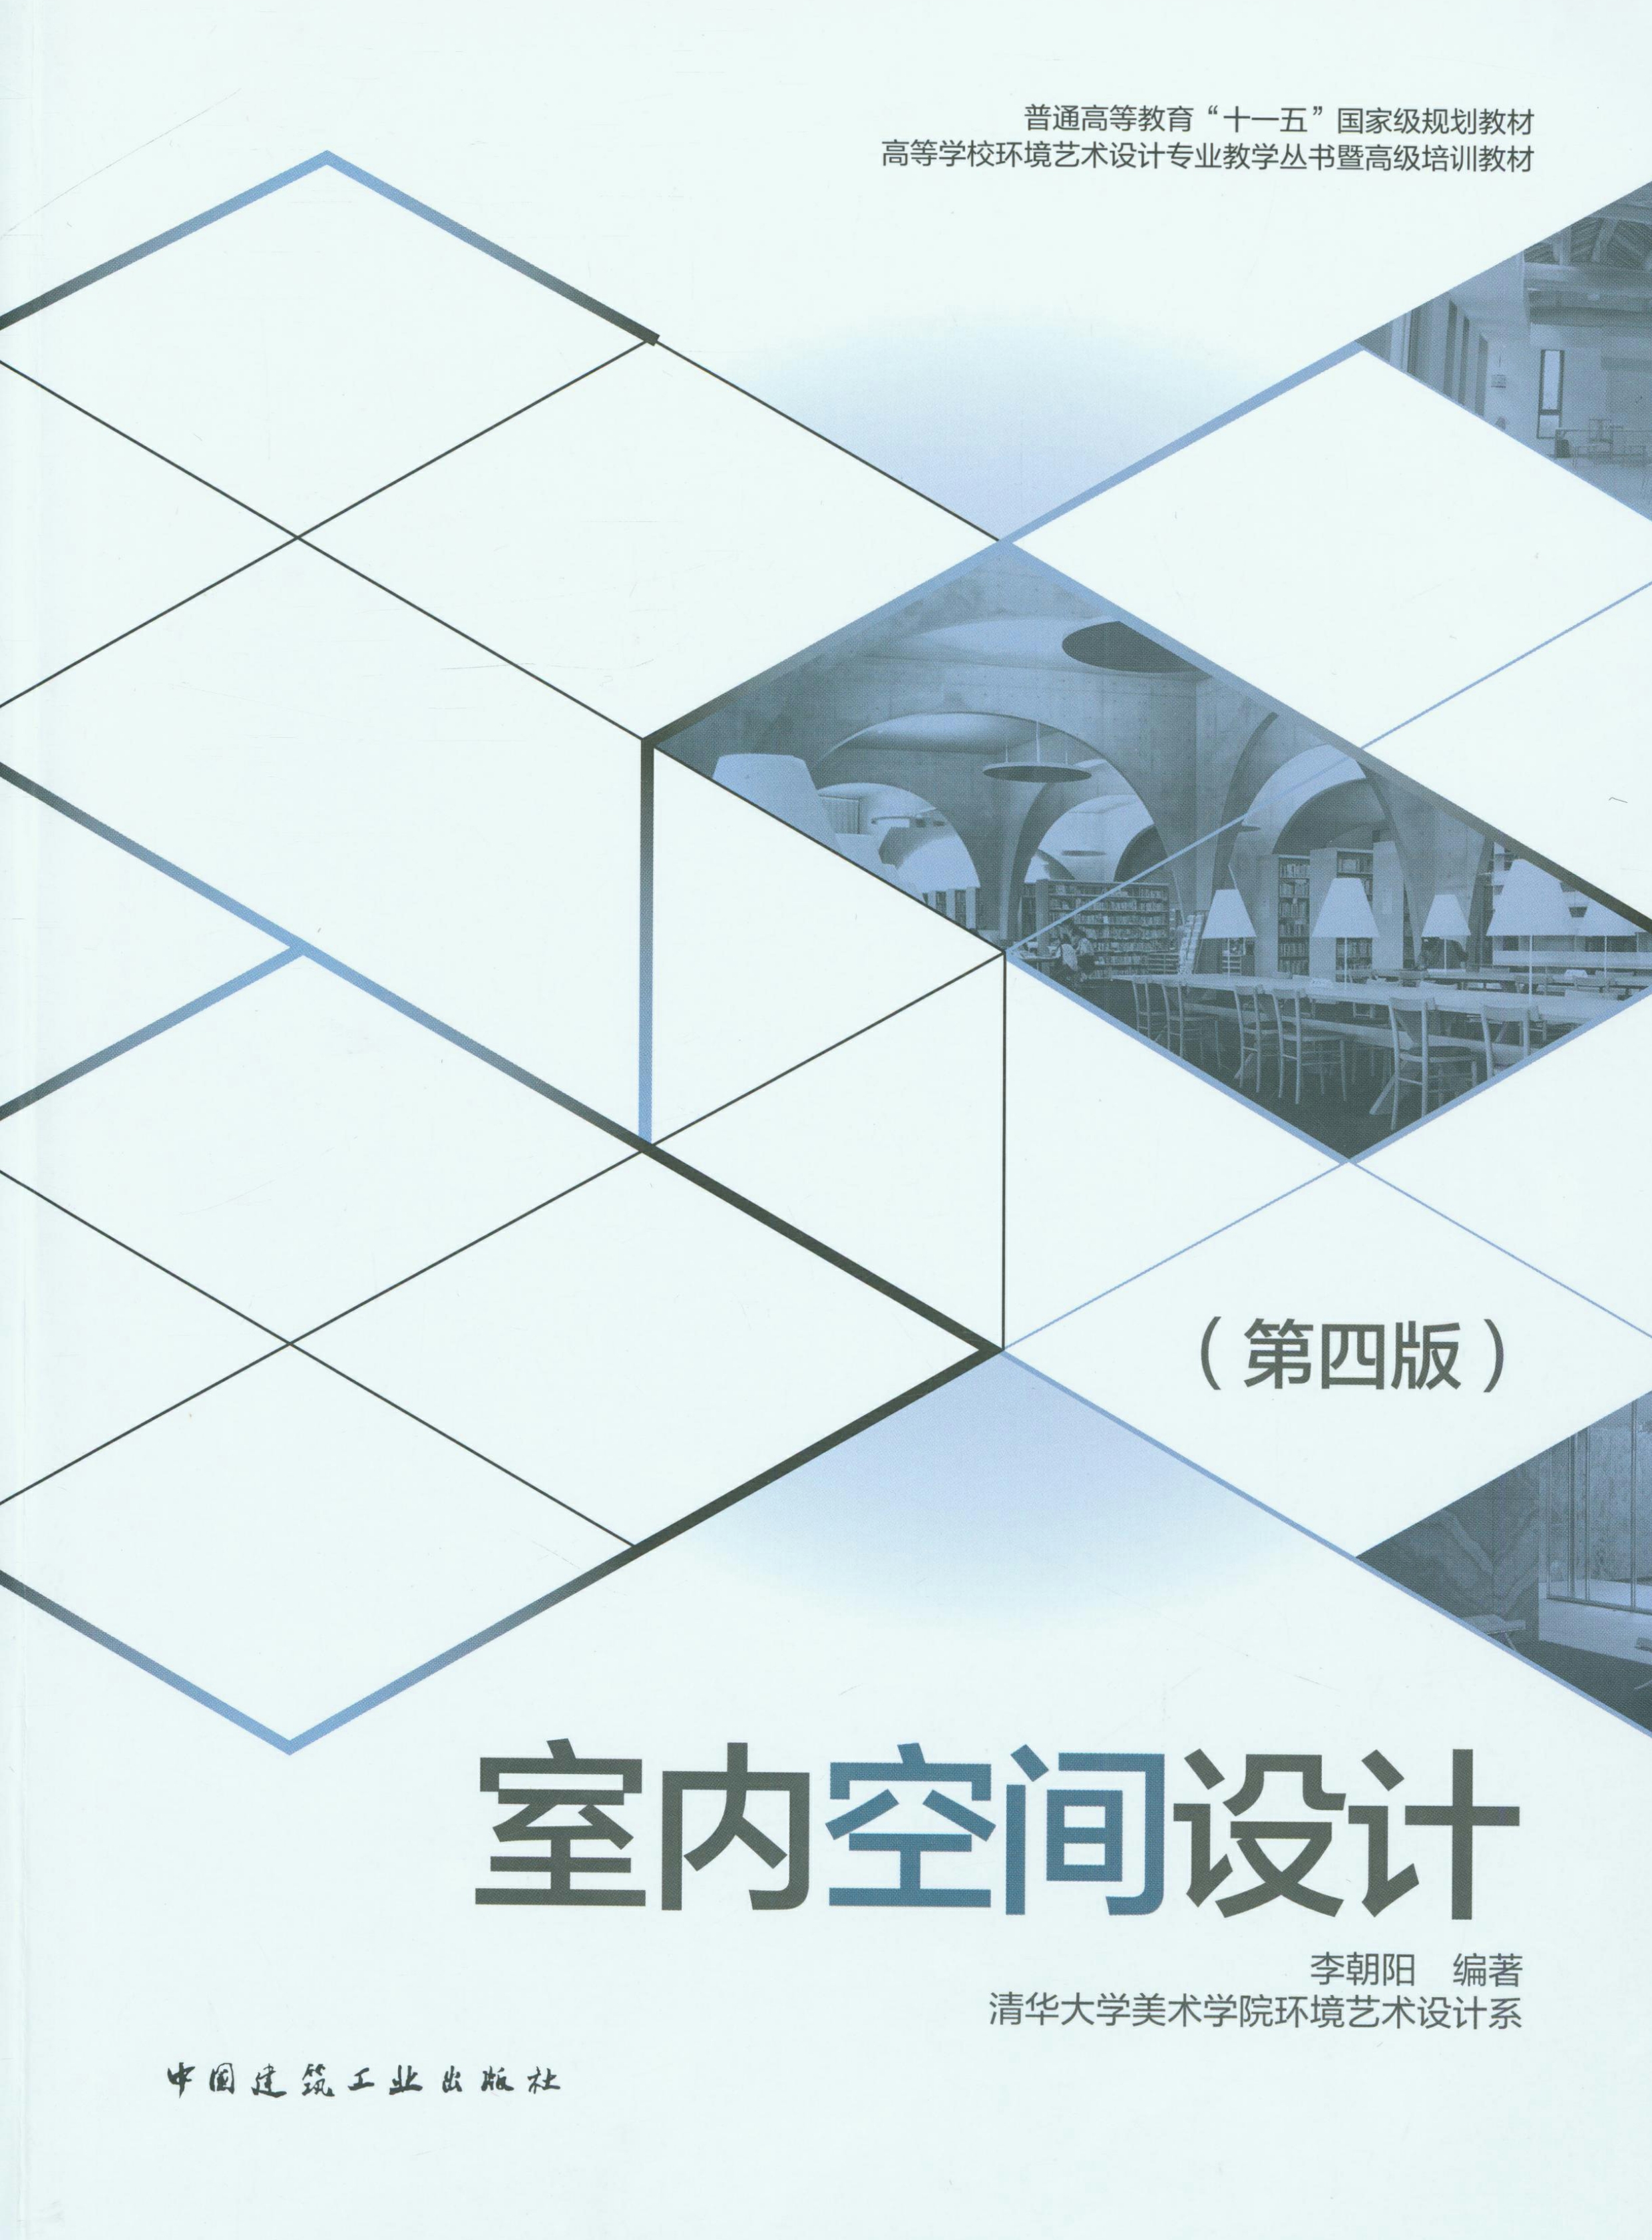 中国工程建设标准知识服务网